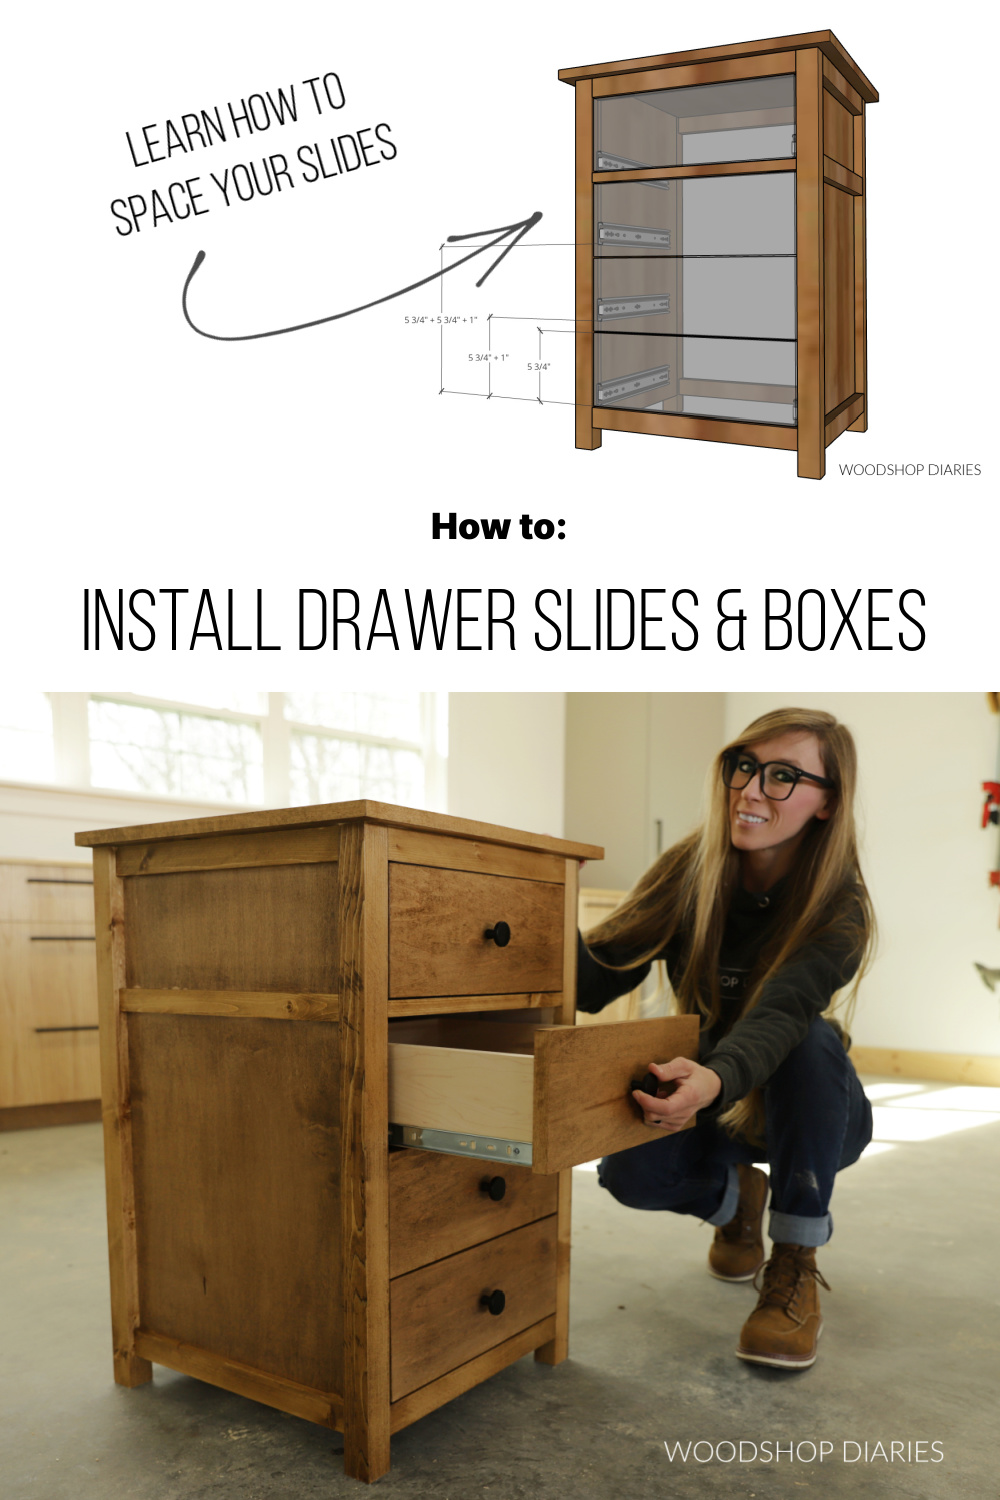 How to Install Drawer Slides - Build Basic